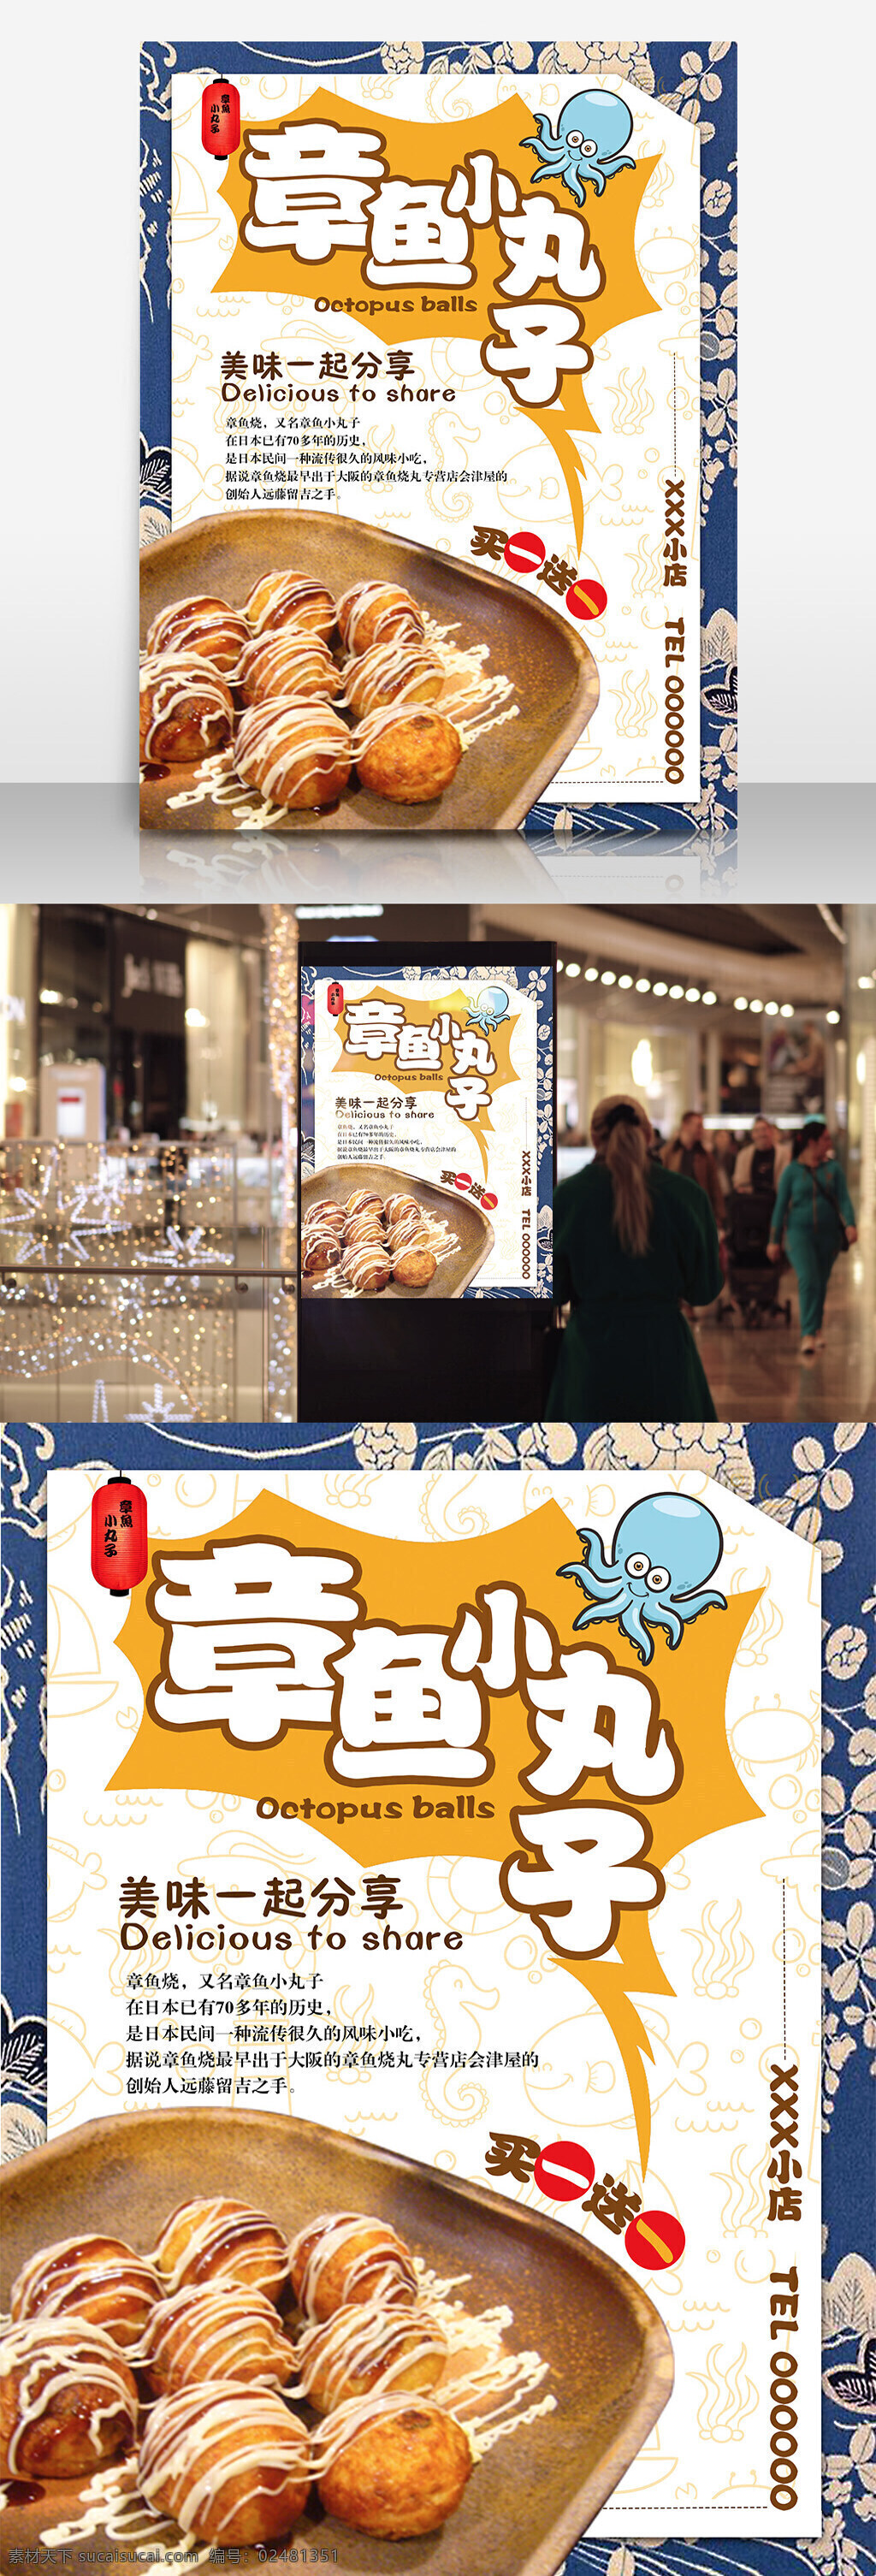 章鱼 小 丸子 日本 美食 海报 小丸子 美味 健康 特色 促销 买一送一 可爱